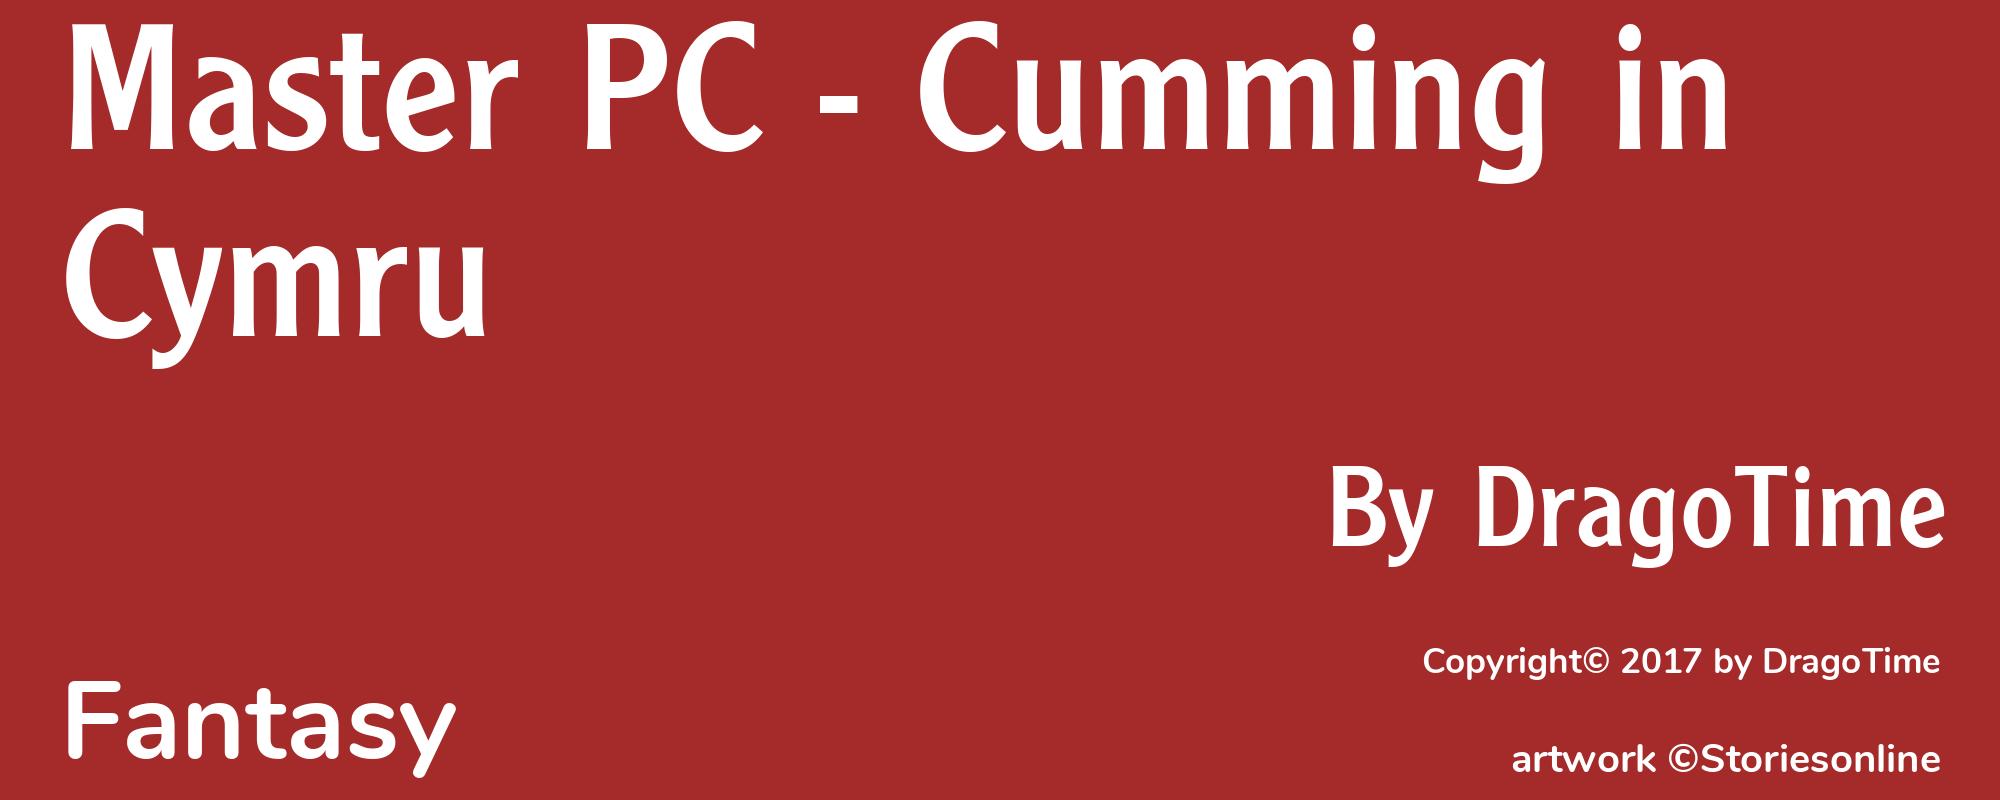 Master PC - Cumming in Cymru - Cover